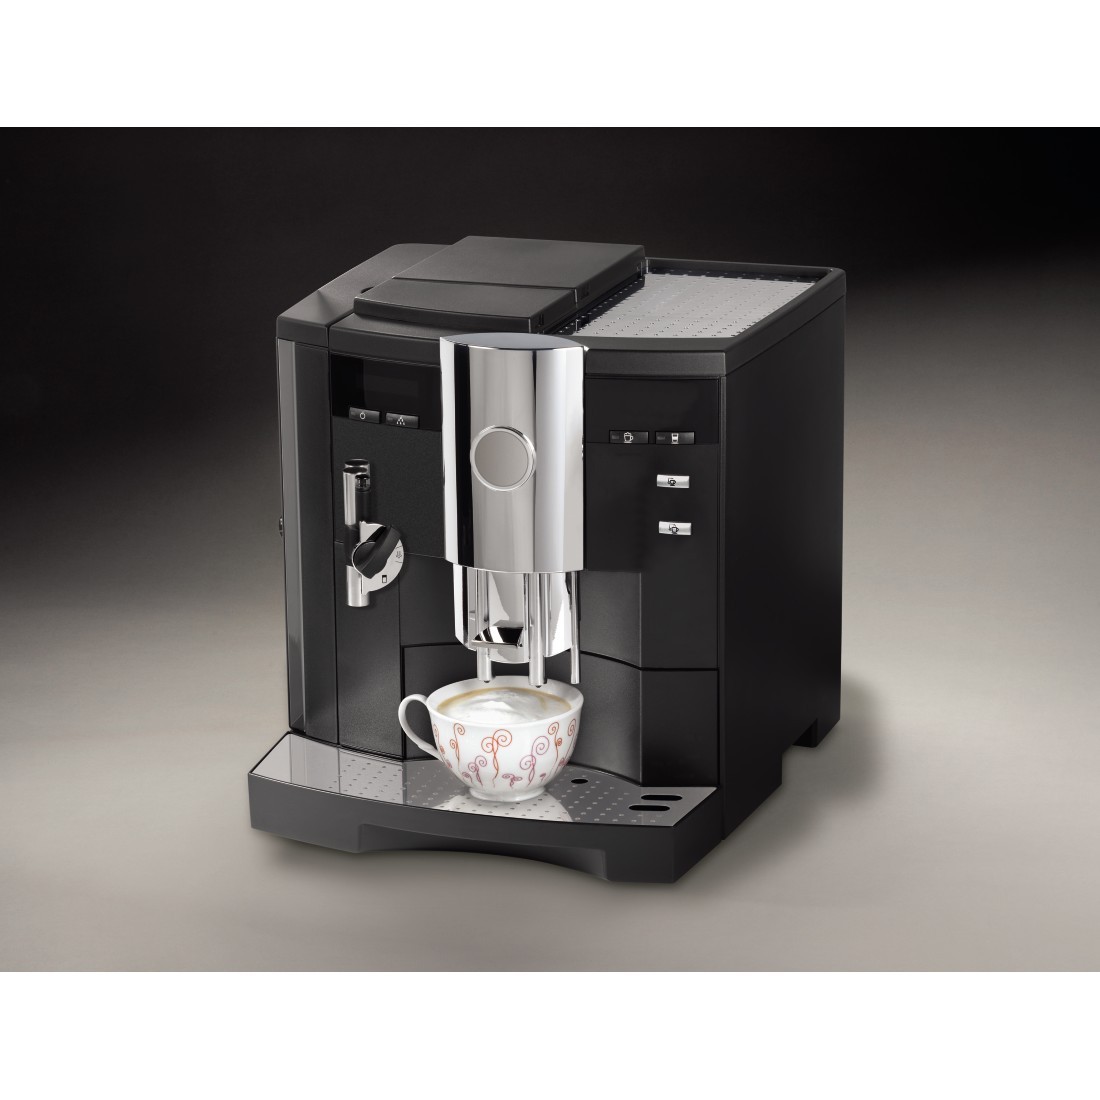 awx2 Druckfähige Anwendung 2 - Xavax, Premium-Entkalker für hochwertige Kaffeeautomaten